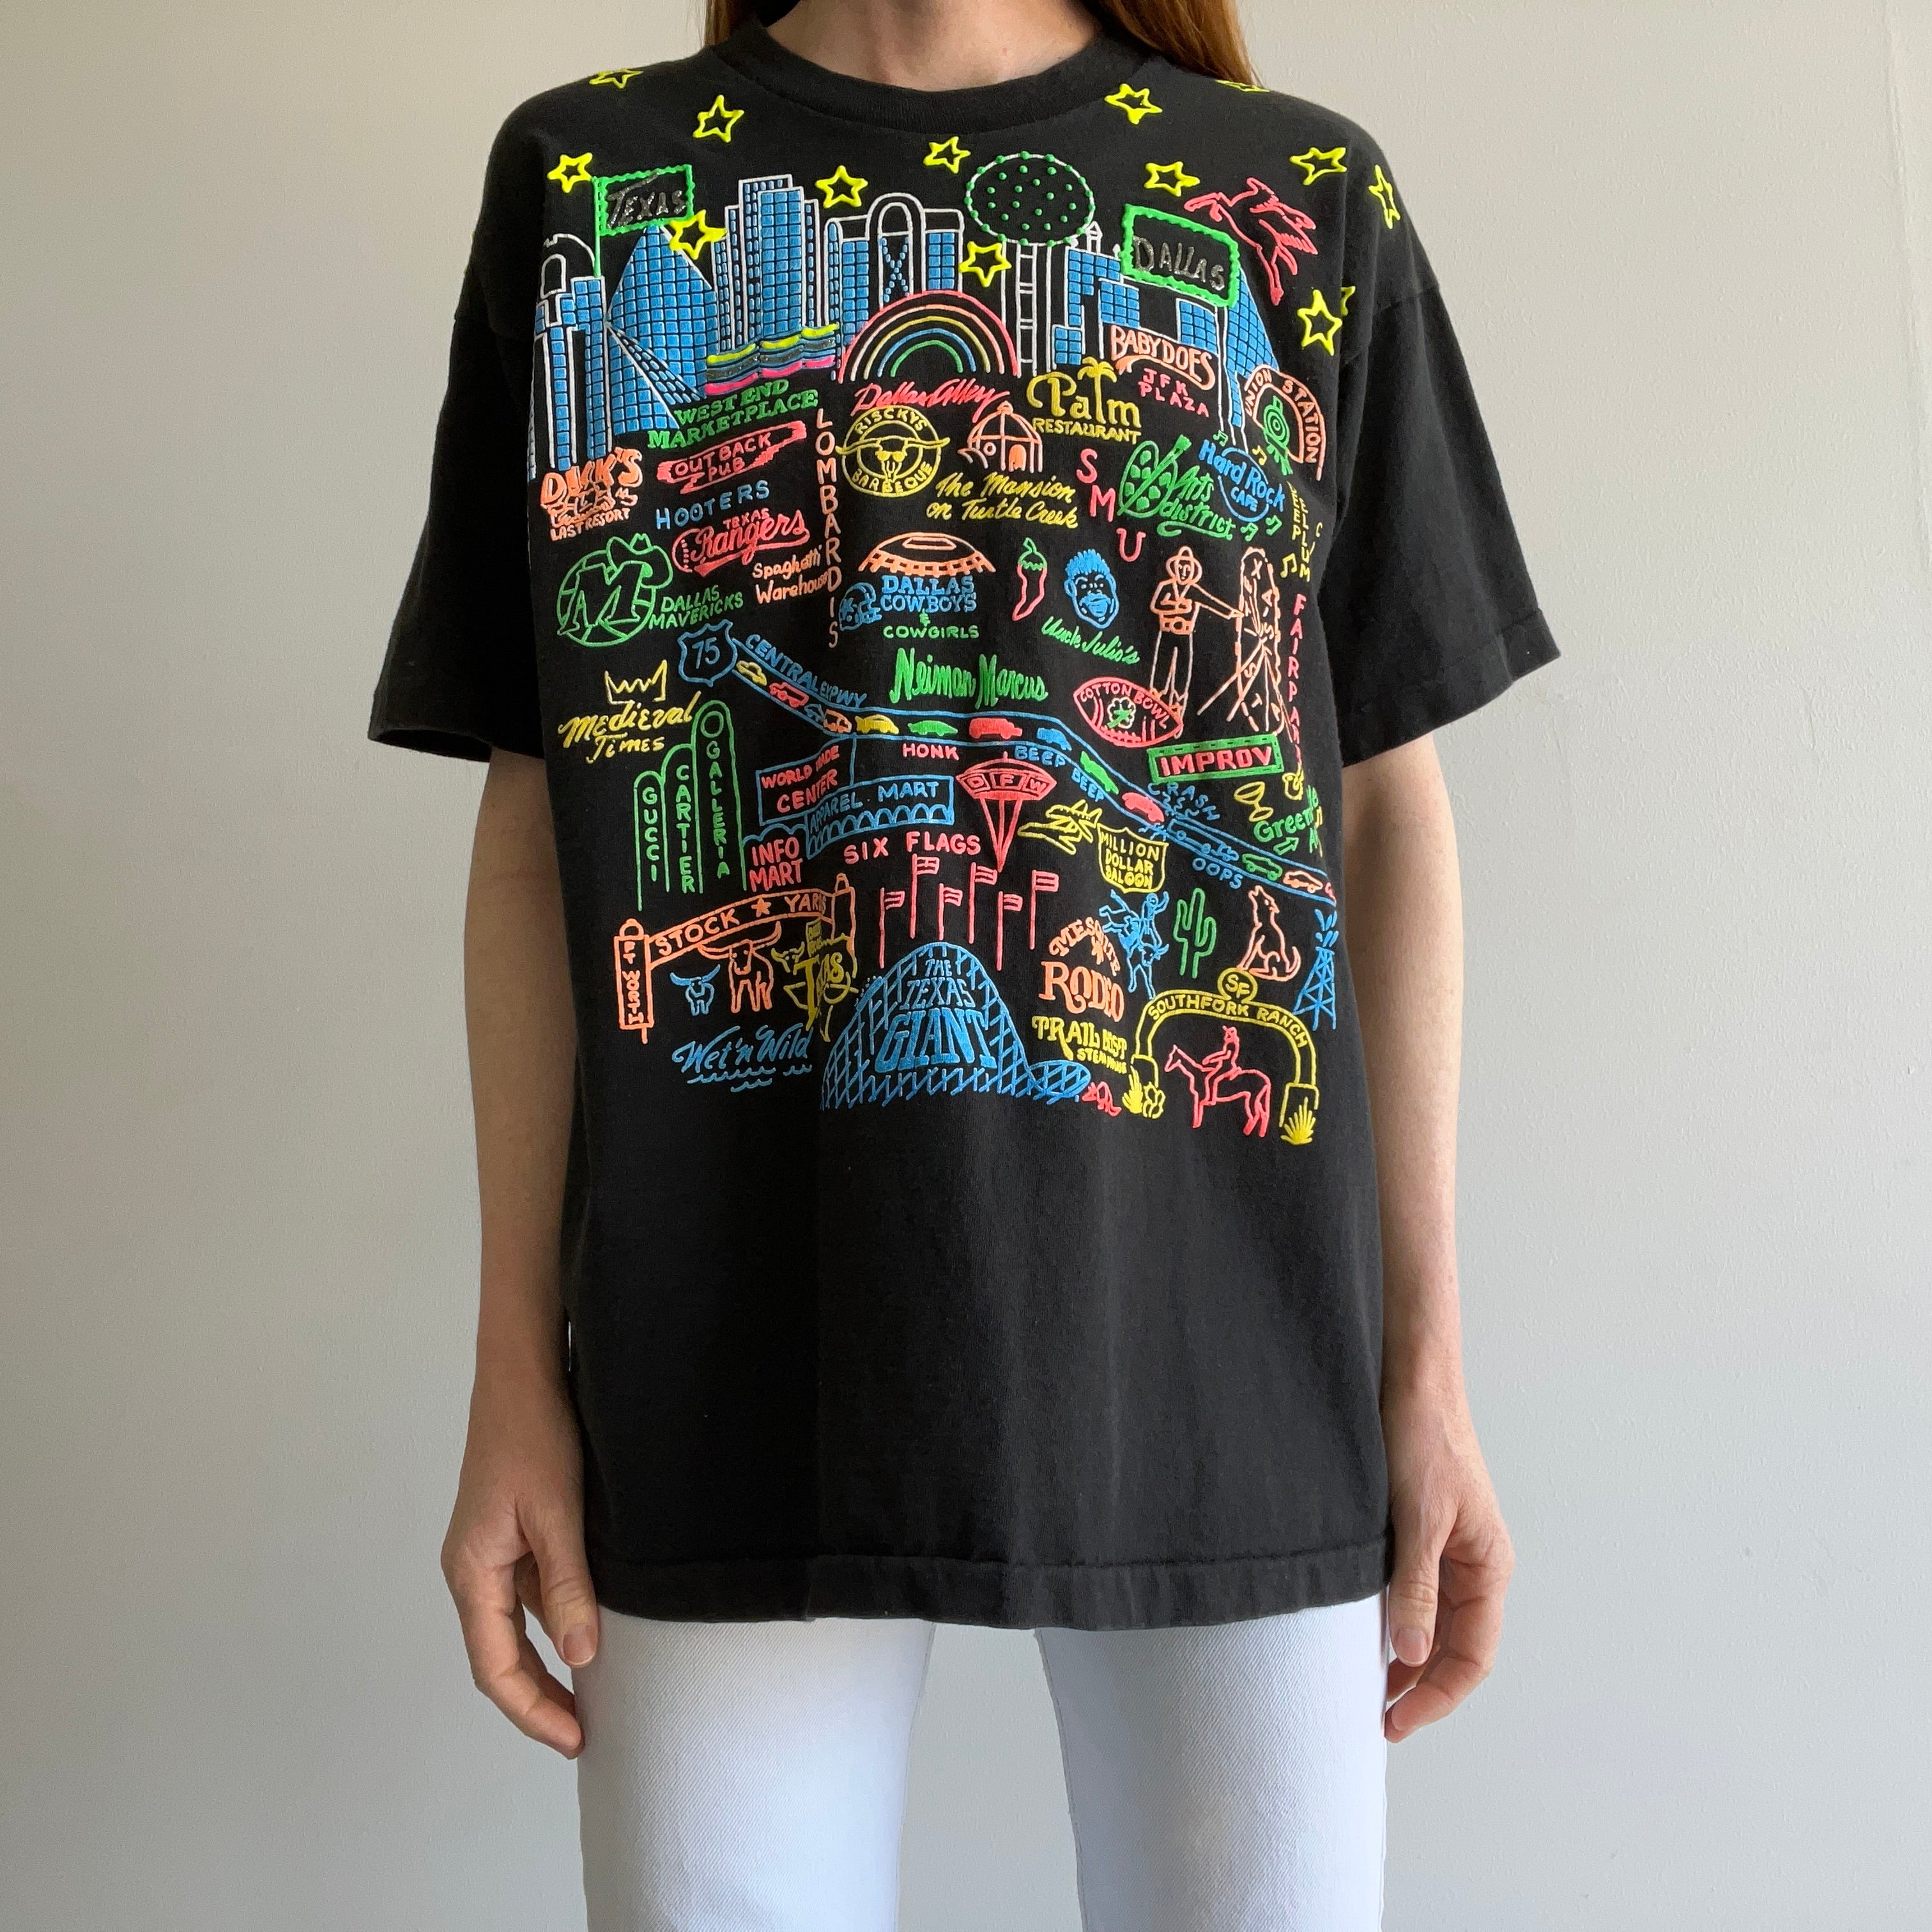 1980s Texas Puffer Paint Tourist T-Shirt - Oh My